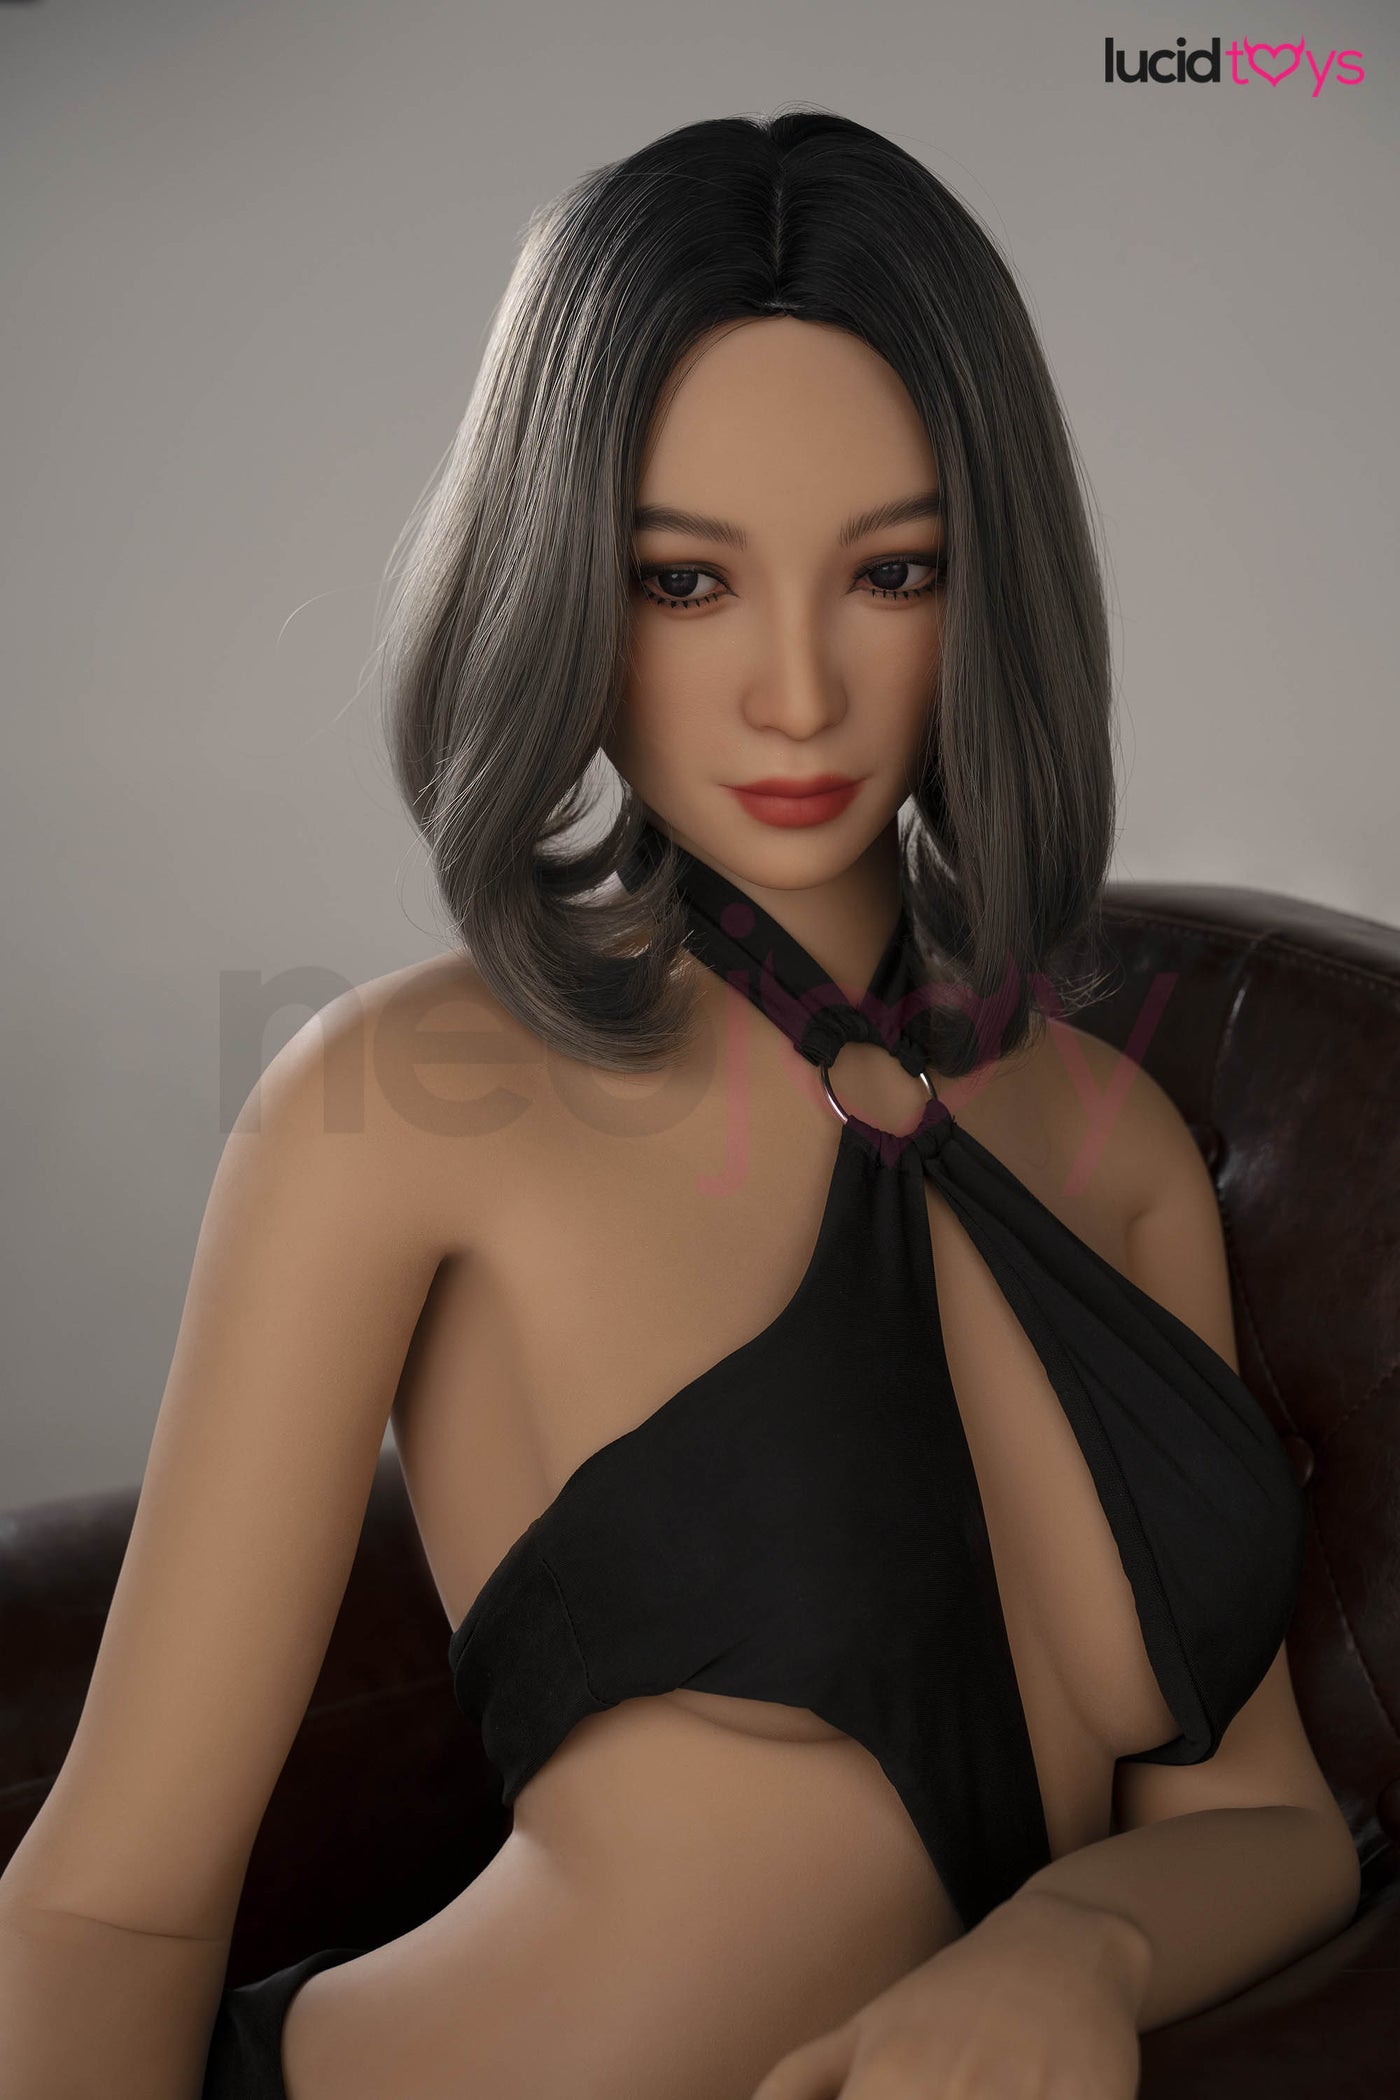 Zelex Torso - Mariam - Realistic Sex Doll Torso -73cm - Tan